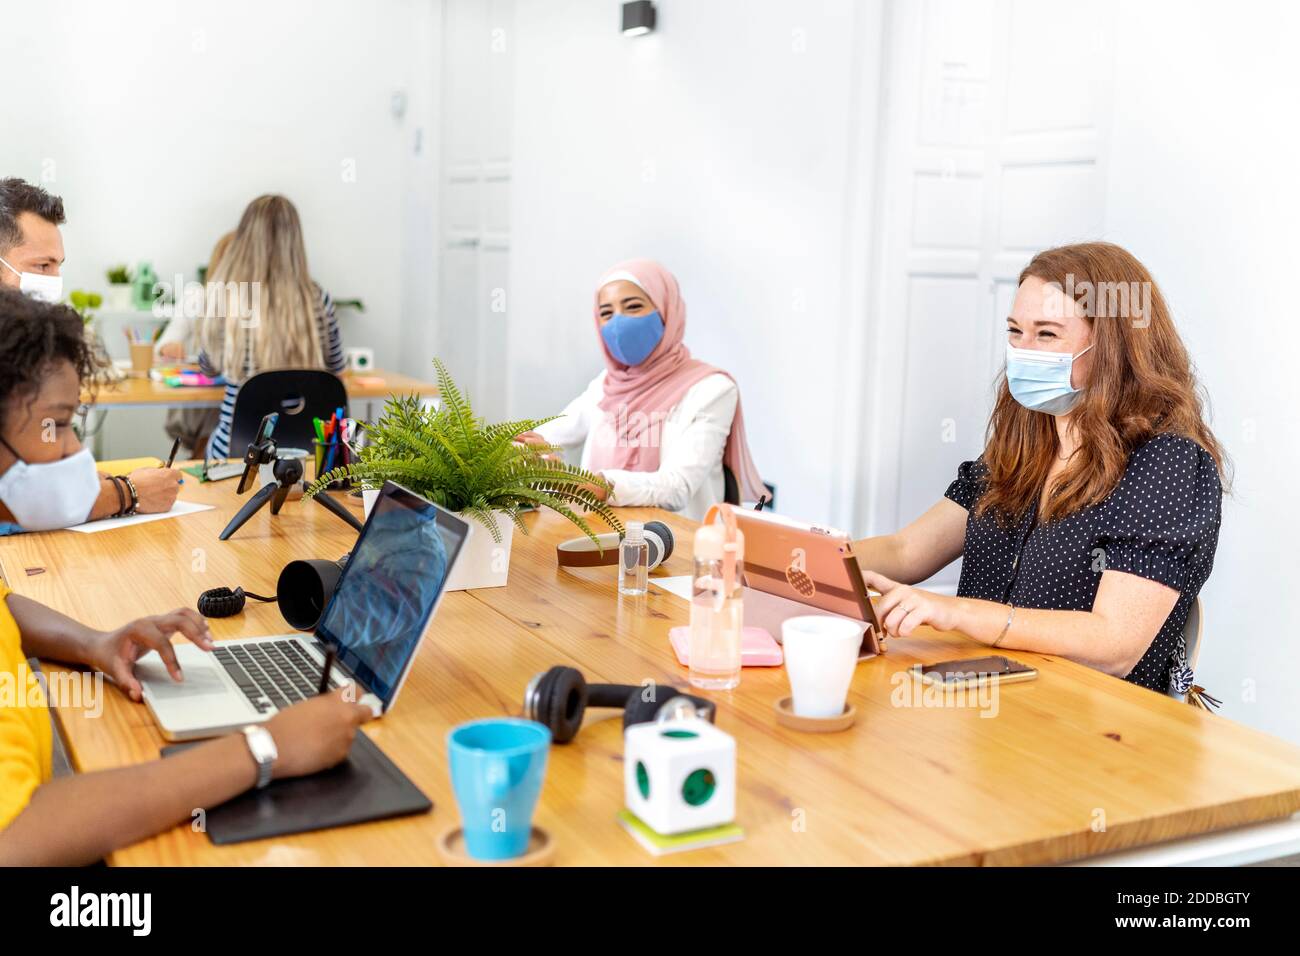 Los empleados que usan máscara para la cara sentados a distancia social mientras trabajan en la oficina Foto de stock